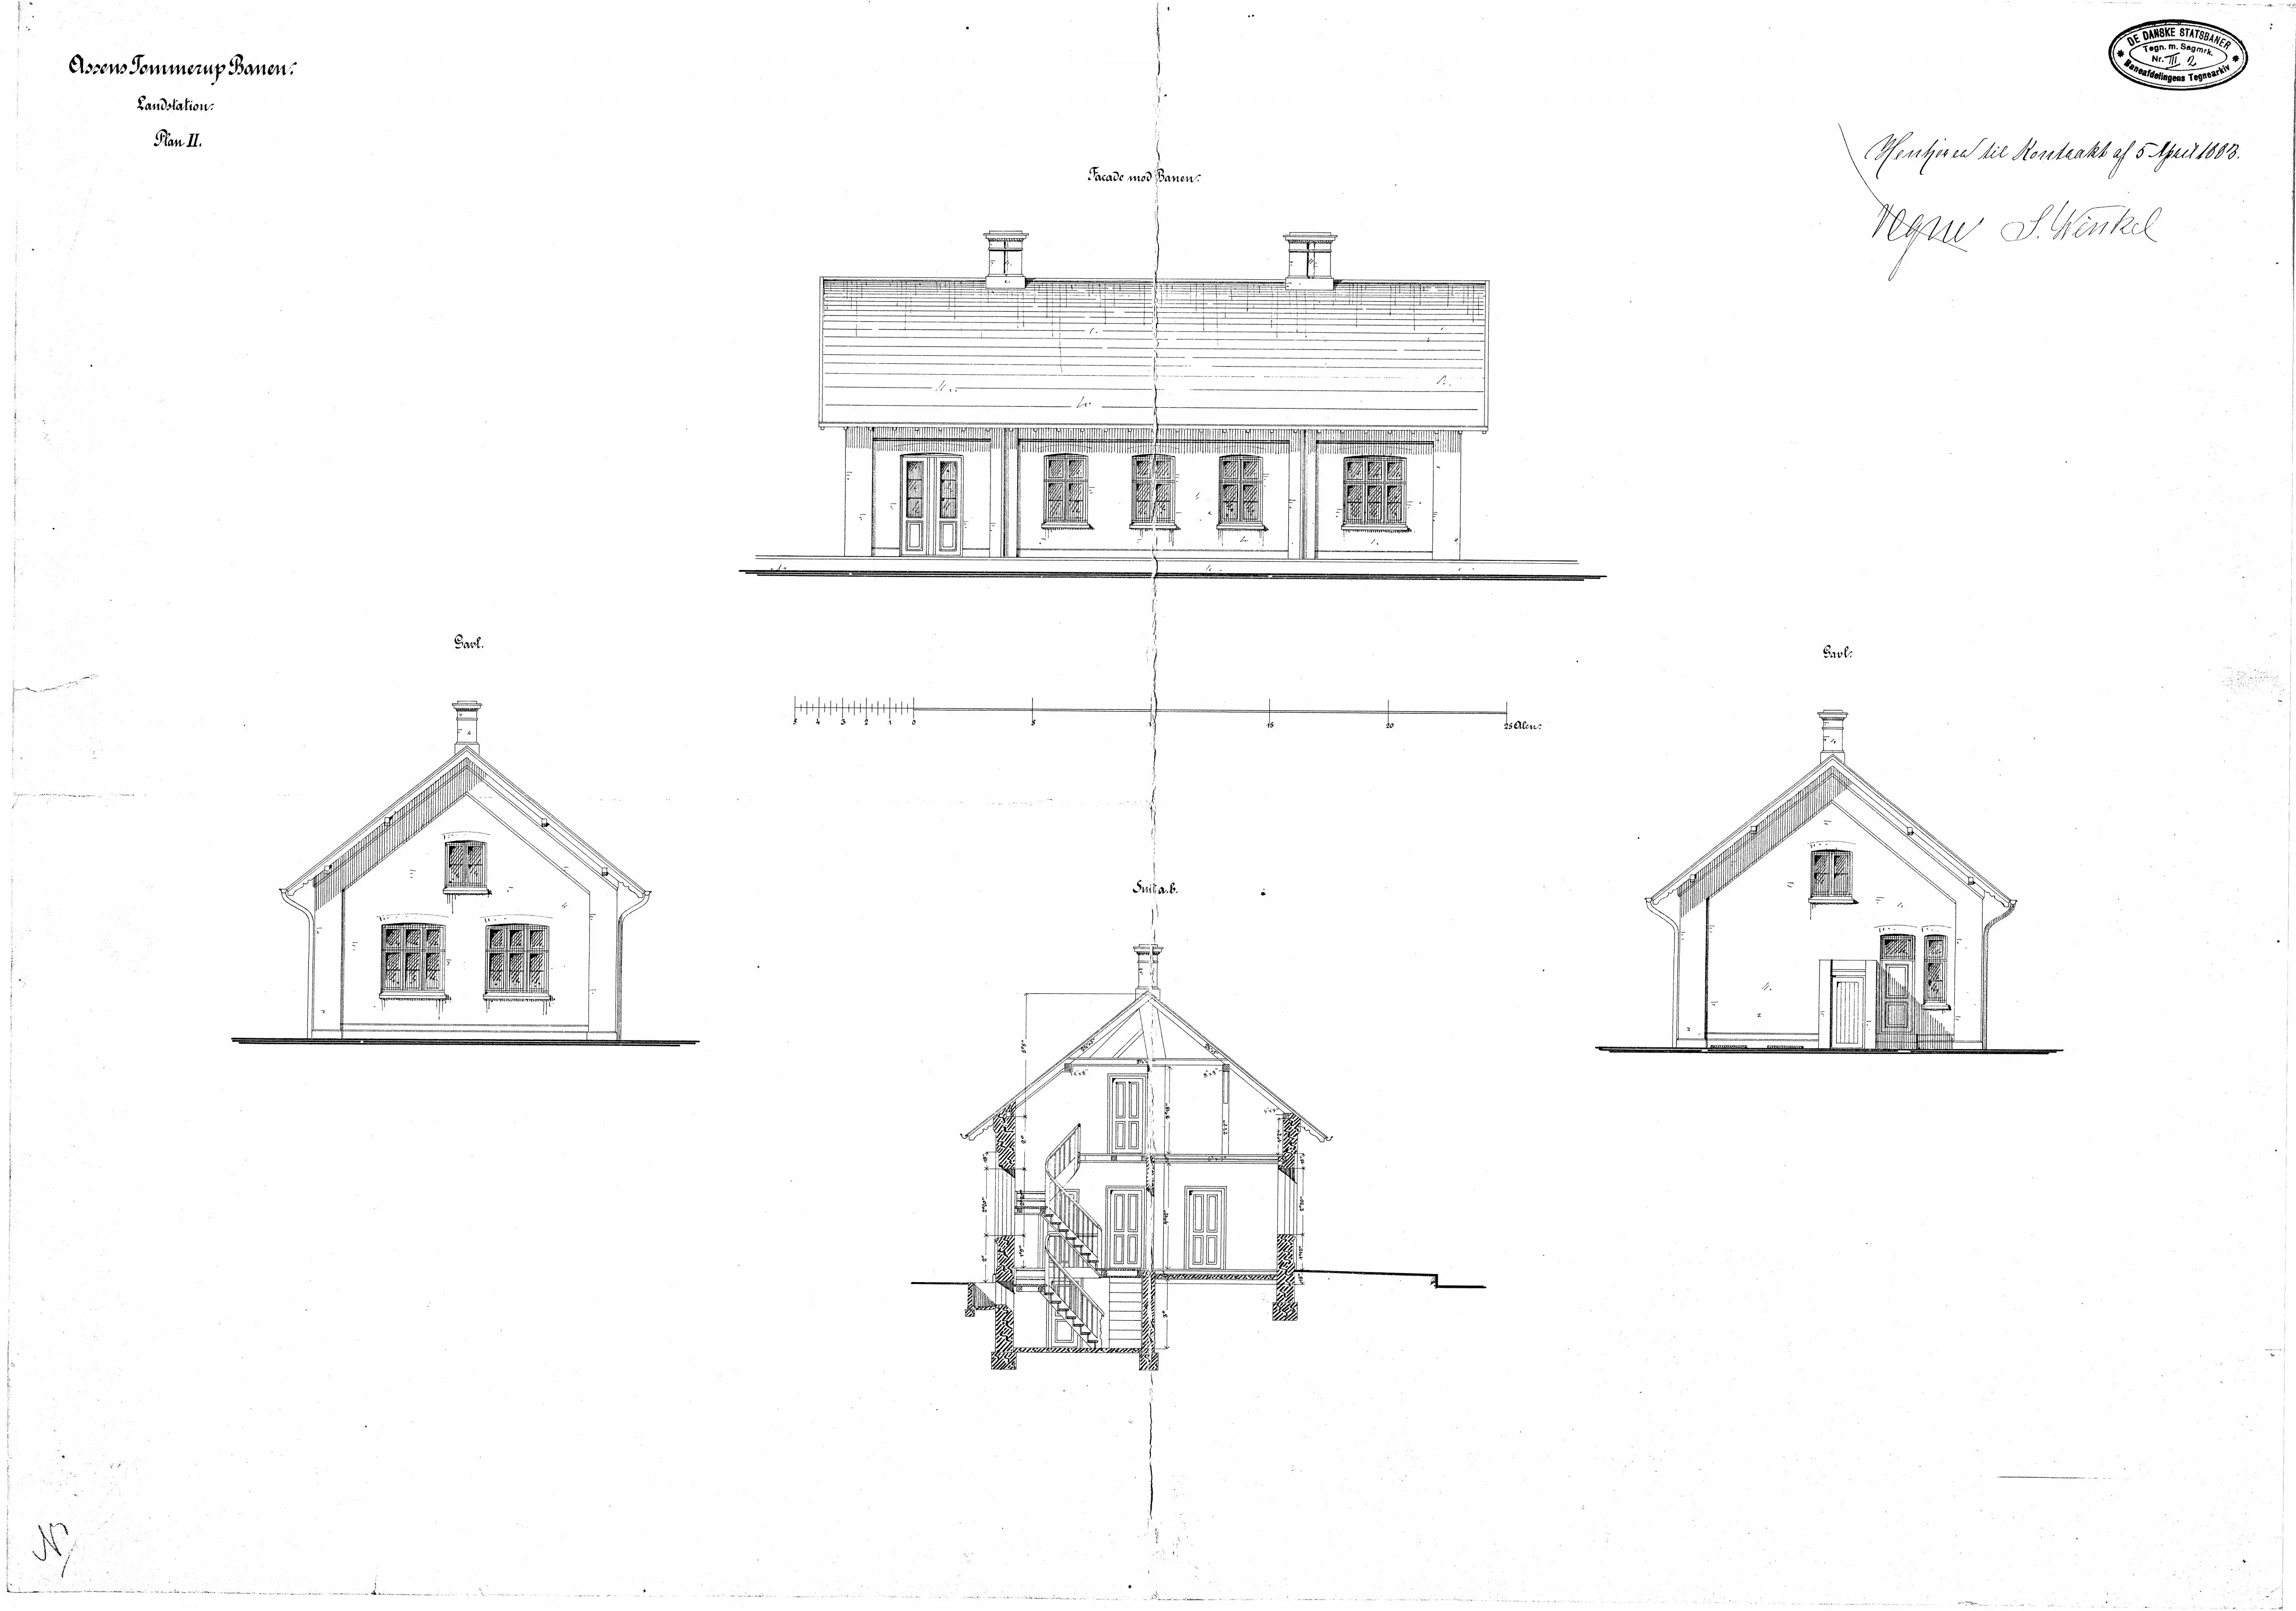 Tegning af Glamsbjerg Station.